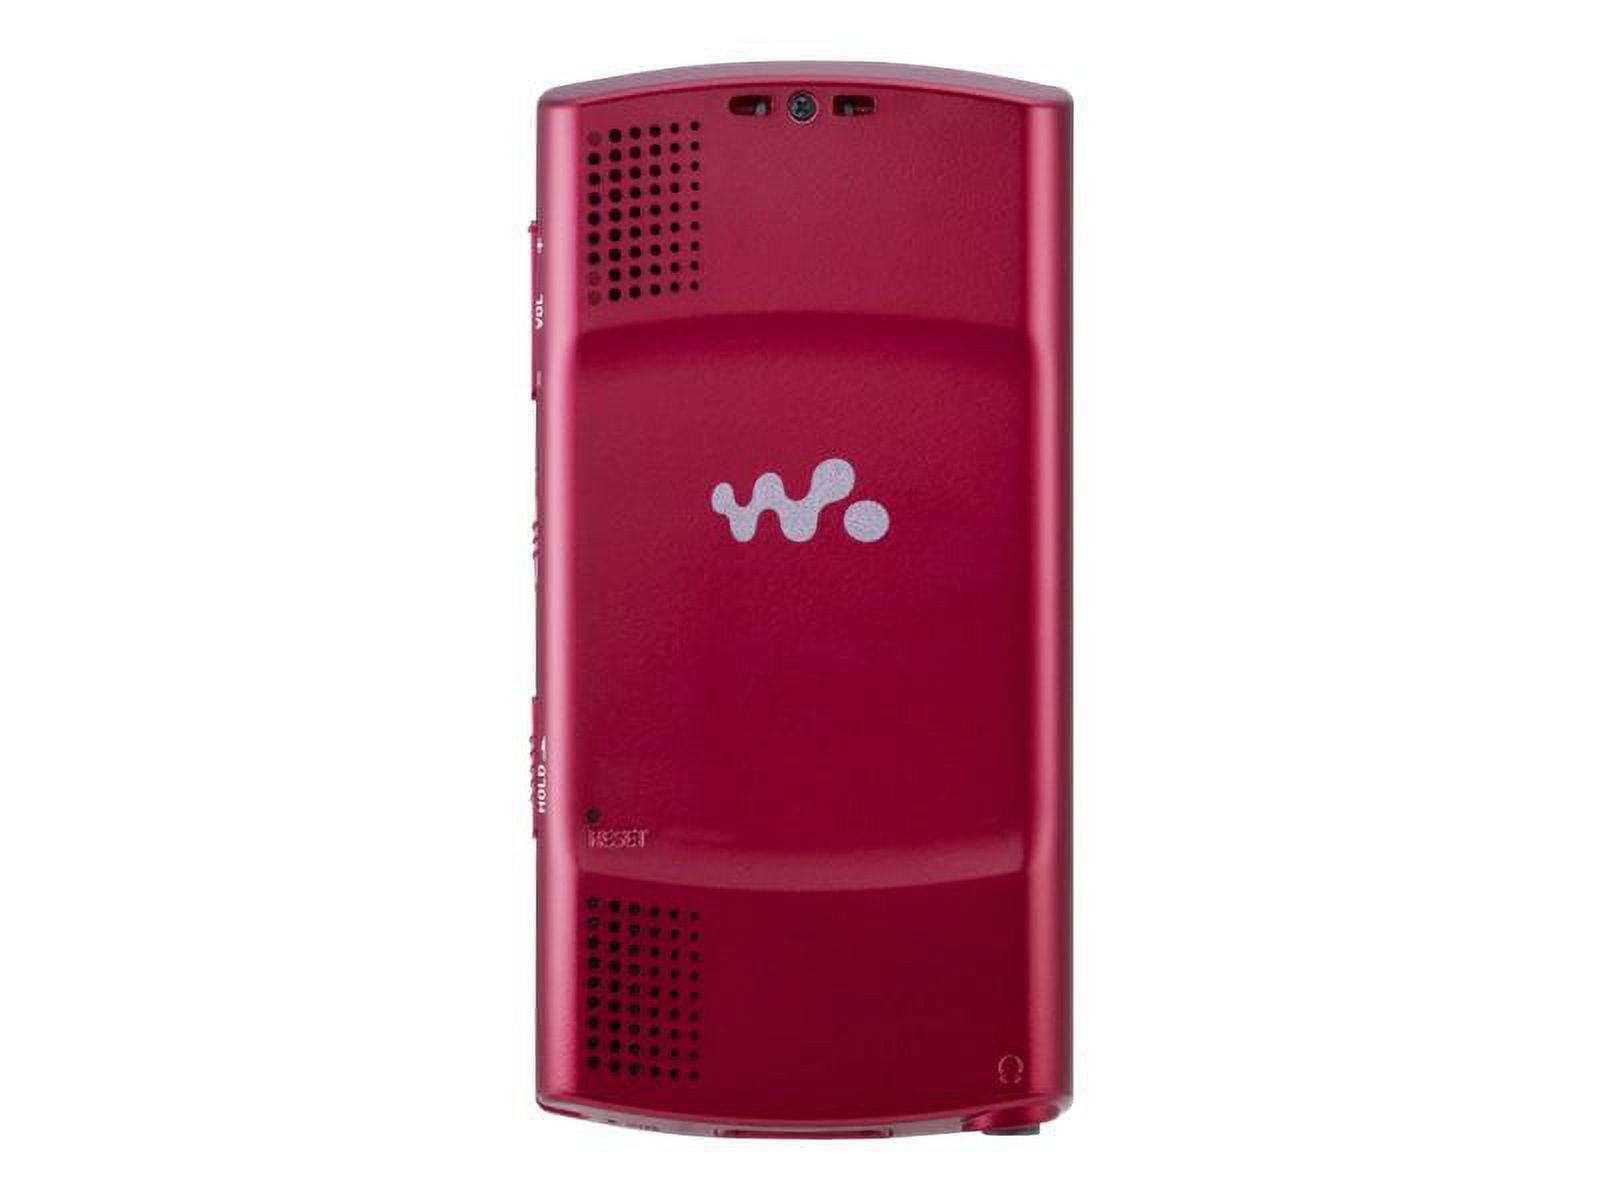 Sony Walkman 2GB MP3/Video Player with LCD Display, NWZ-E435FSLVWM